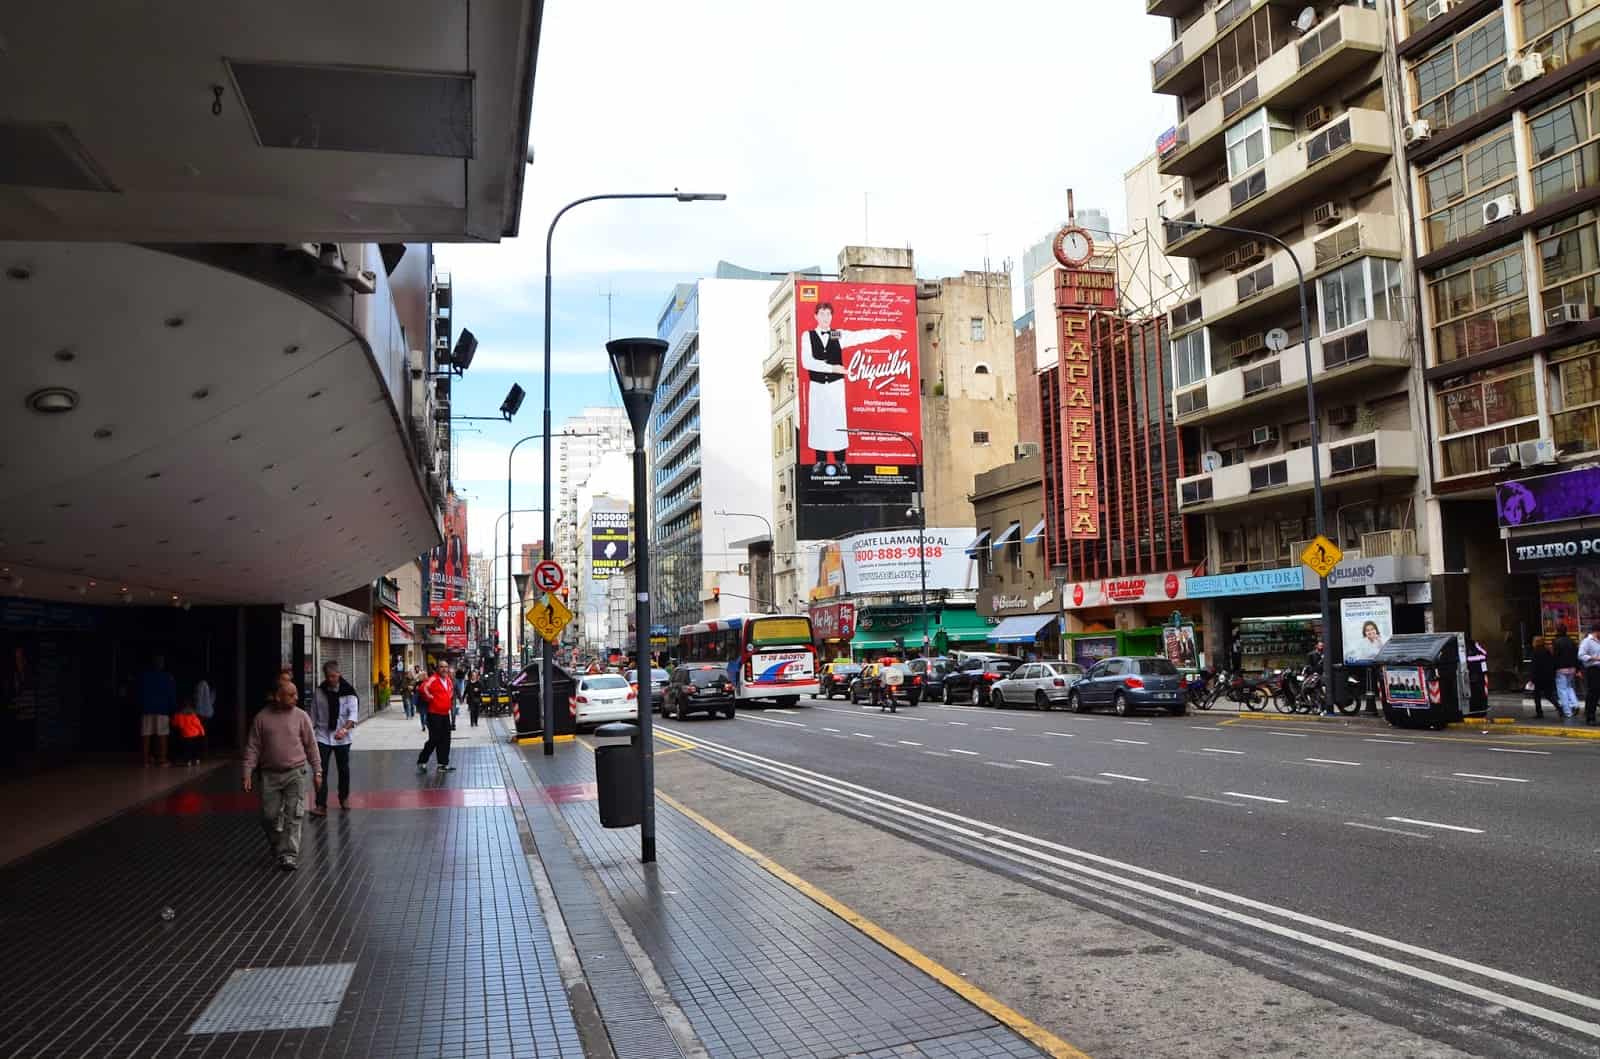 Avenida Corrientes in Buenos Aires, Argentina